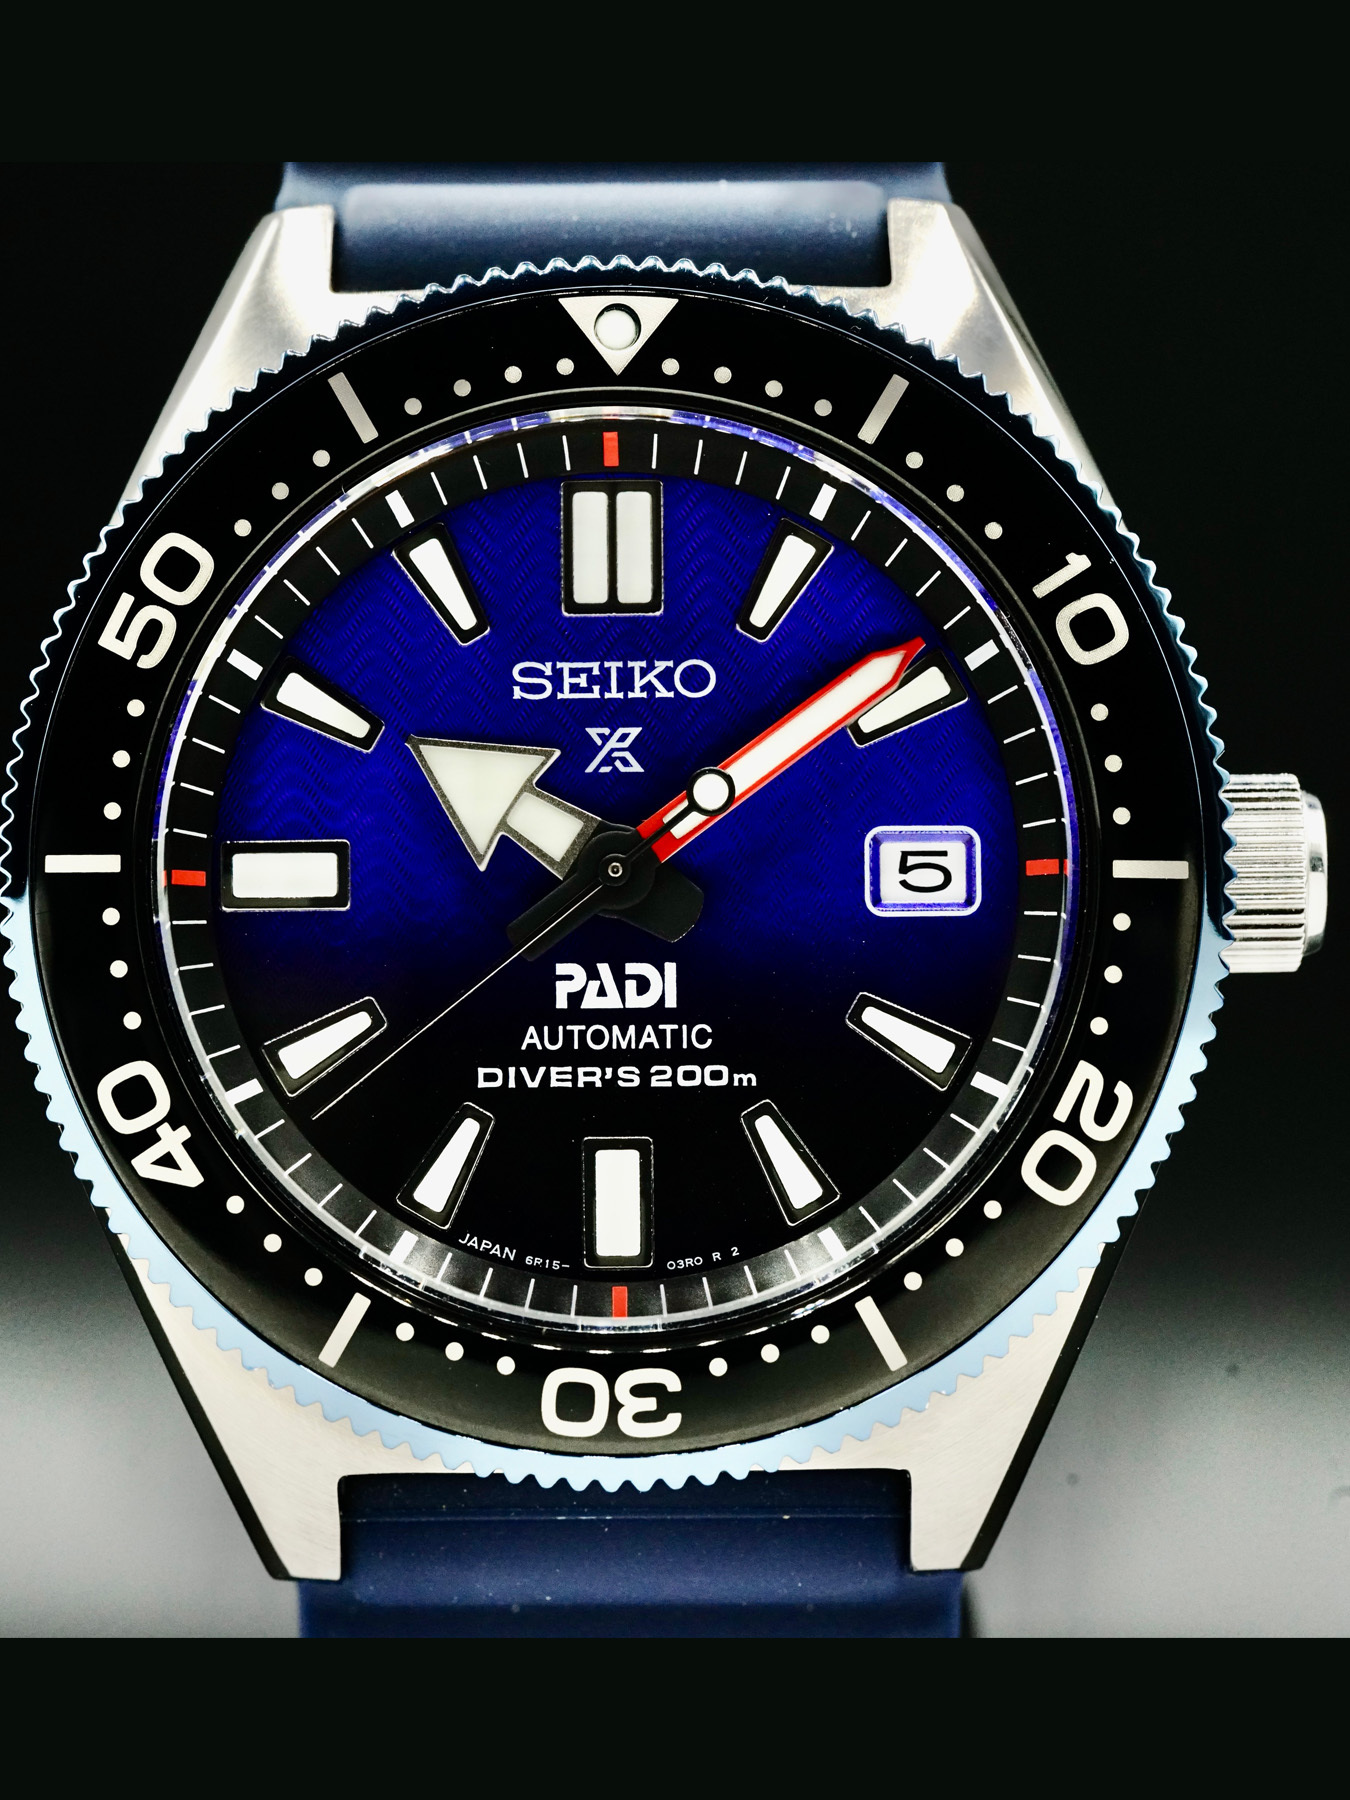 Seiko SBDC055 PADI Air Divers Prospex - Exquisite Timepieces